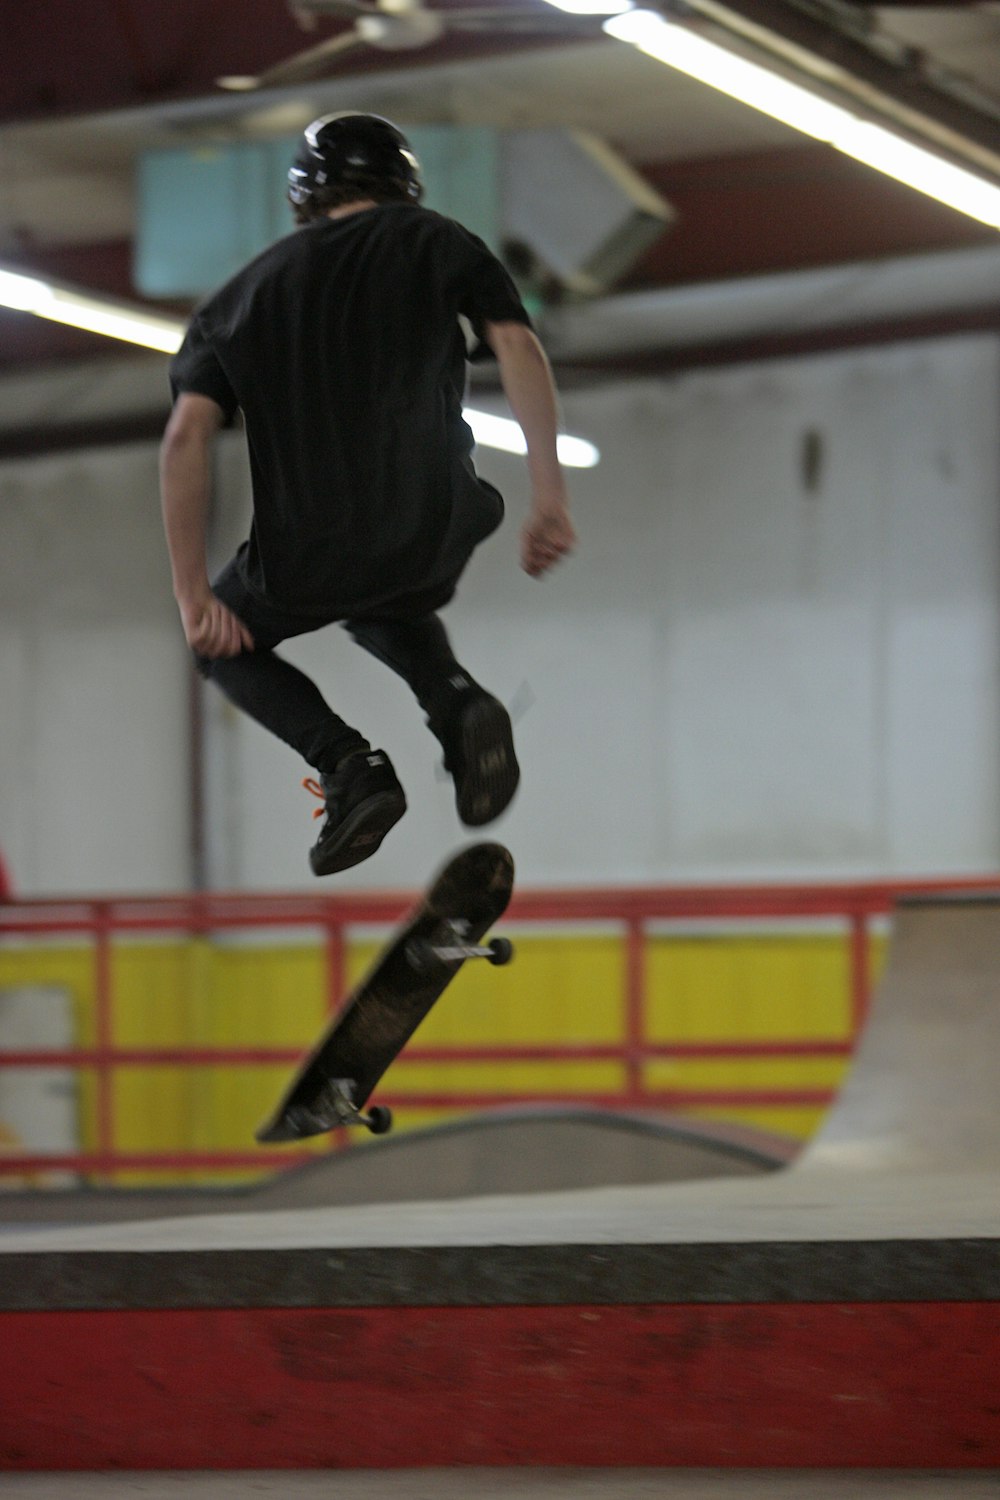 Ein Mann, der beim Skateboardfahren durch die Luft fliegt